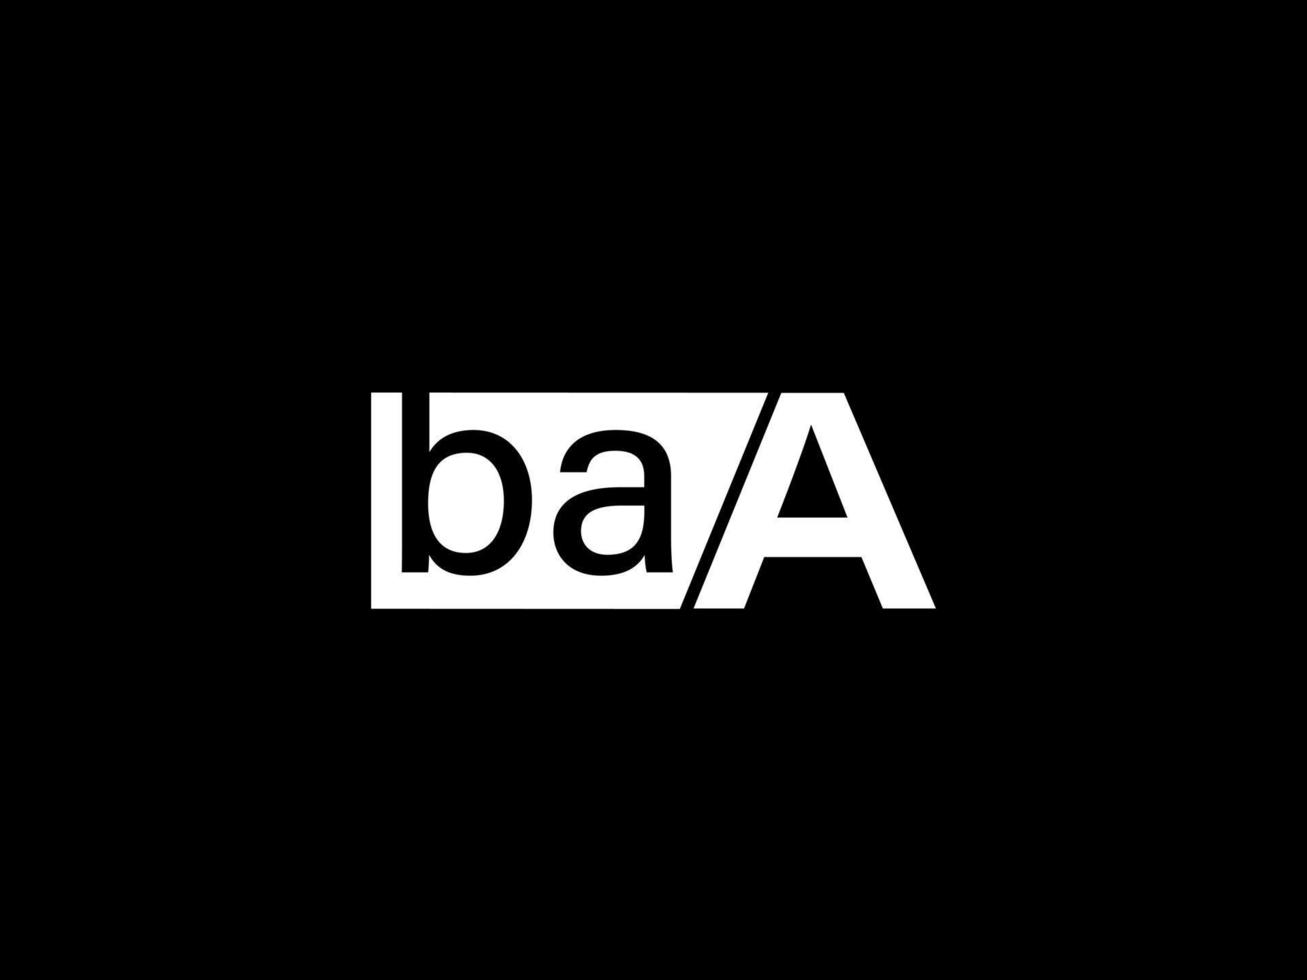 baa Logo und Grafikdesign Vektorgrafiken, Symbole auf schwarzem Hintergrund isoliert vektor